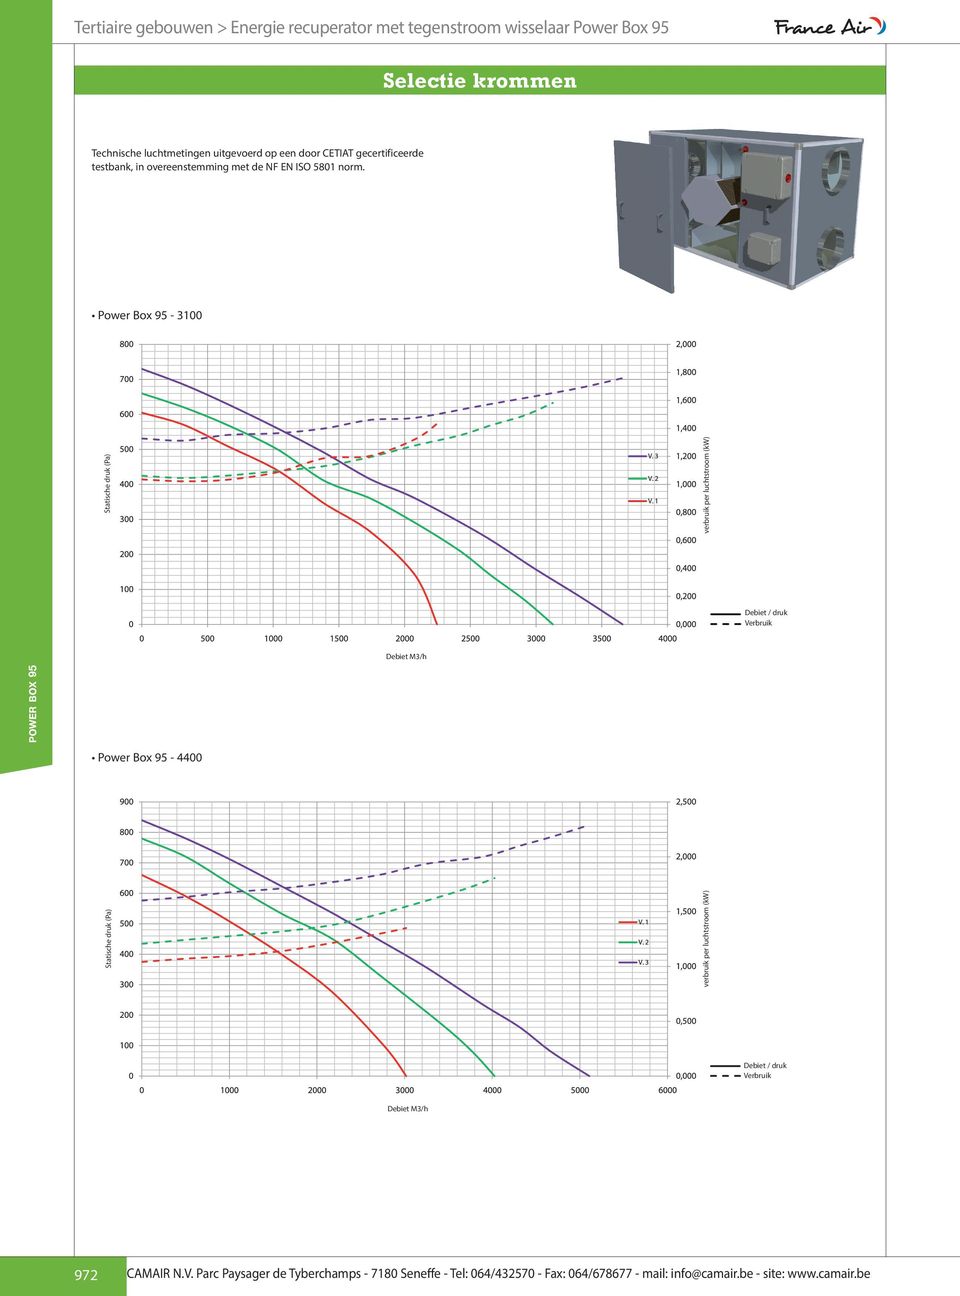 norm. Power Box 95-3100 Statische druk (Pa) verbruik per luchtstroom (kw) Debiet / druk Verbruik Debiet M3/h